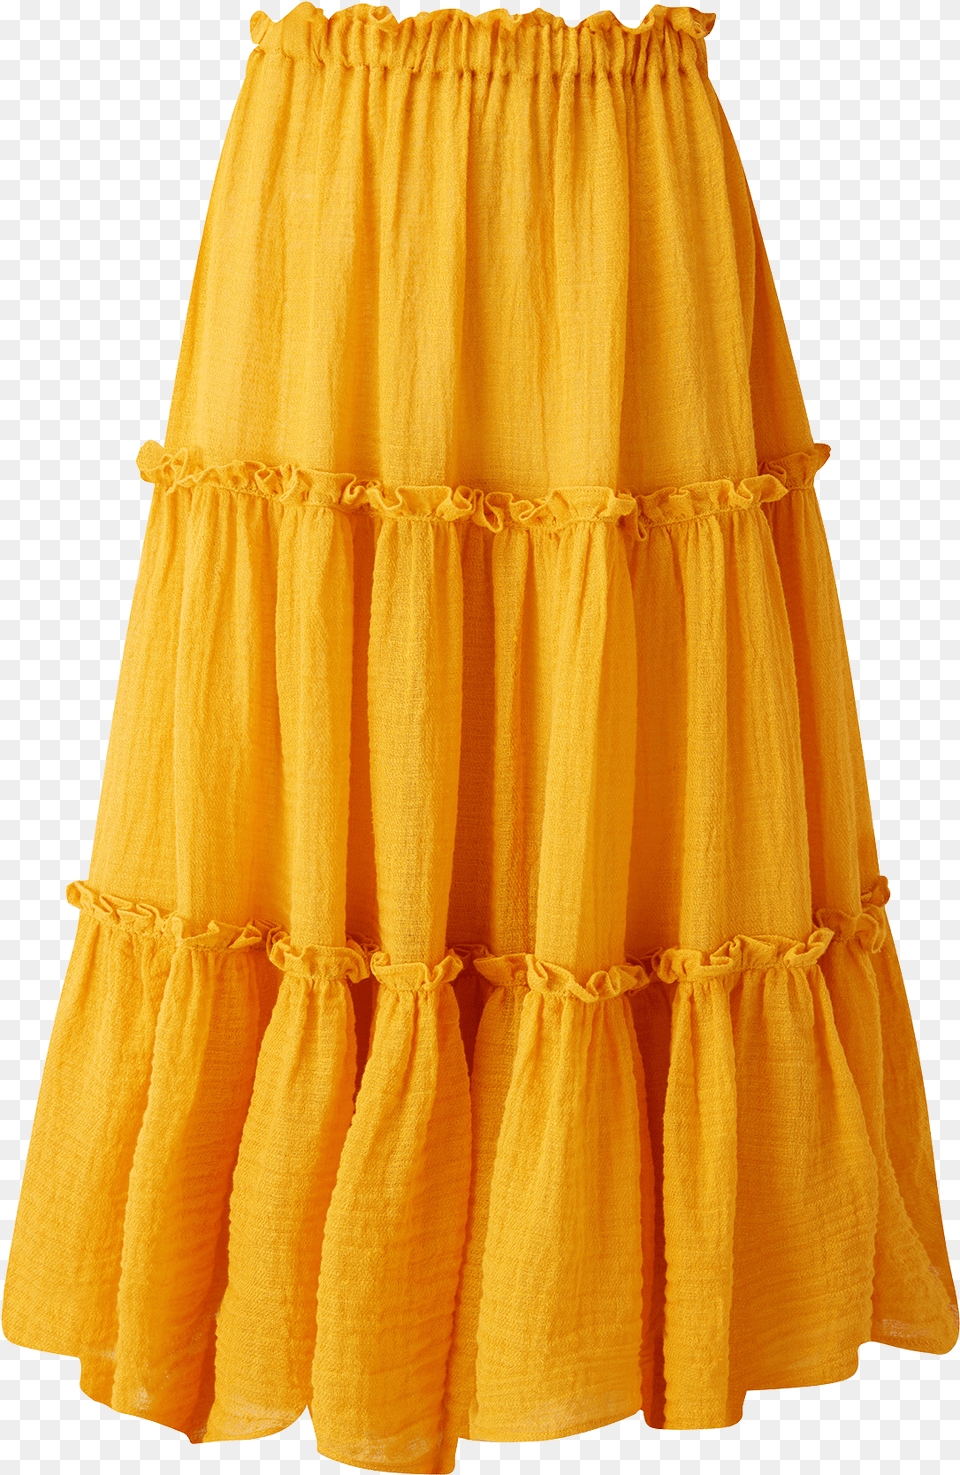 Peasant Skirt, Clothing, Miniskirt, Hosiery, Sock Png